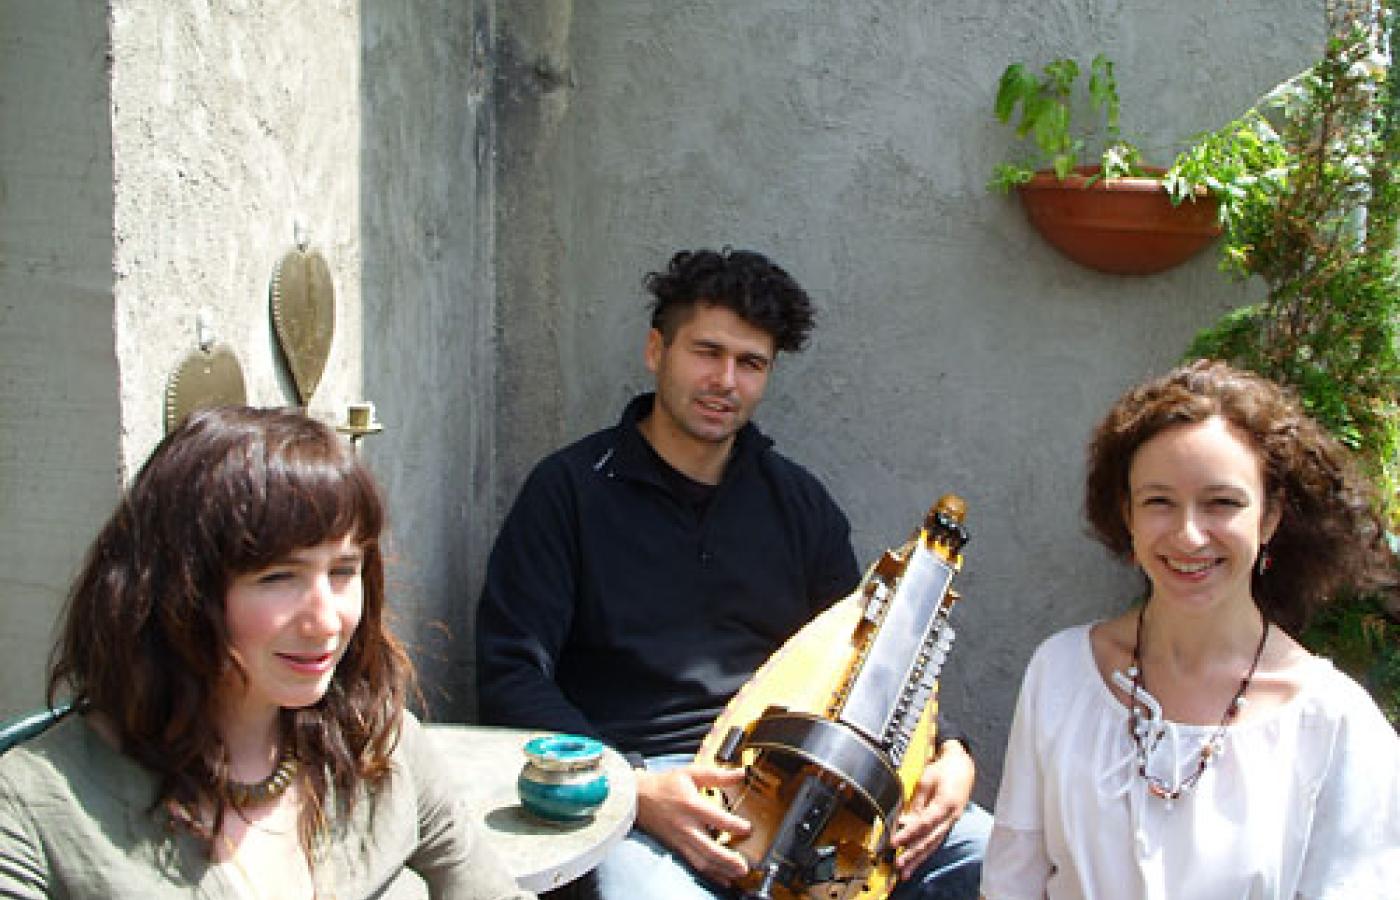 Gawędziarze (od lewej) Beata Frankowska, Maciek Cierliński i Agnieszka Aysen Kaim (fot. Anna Jaskulska).